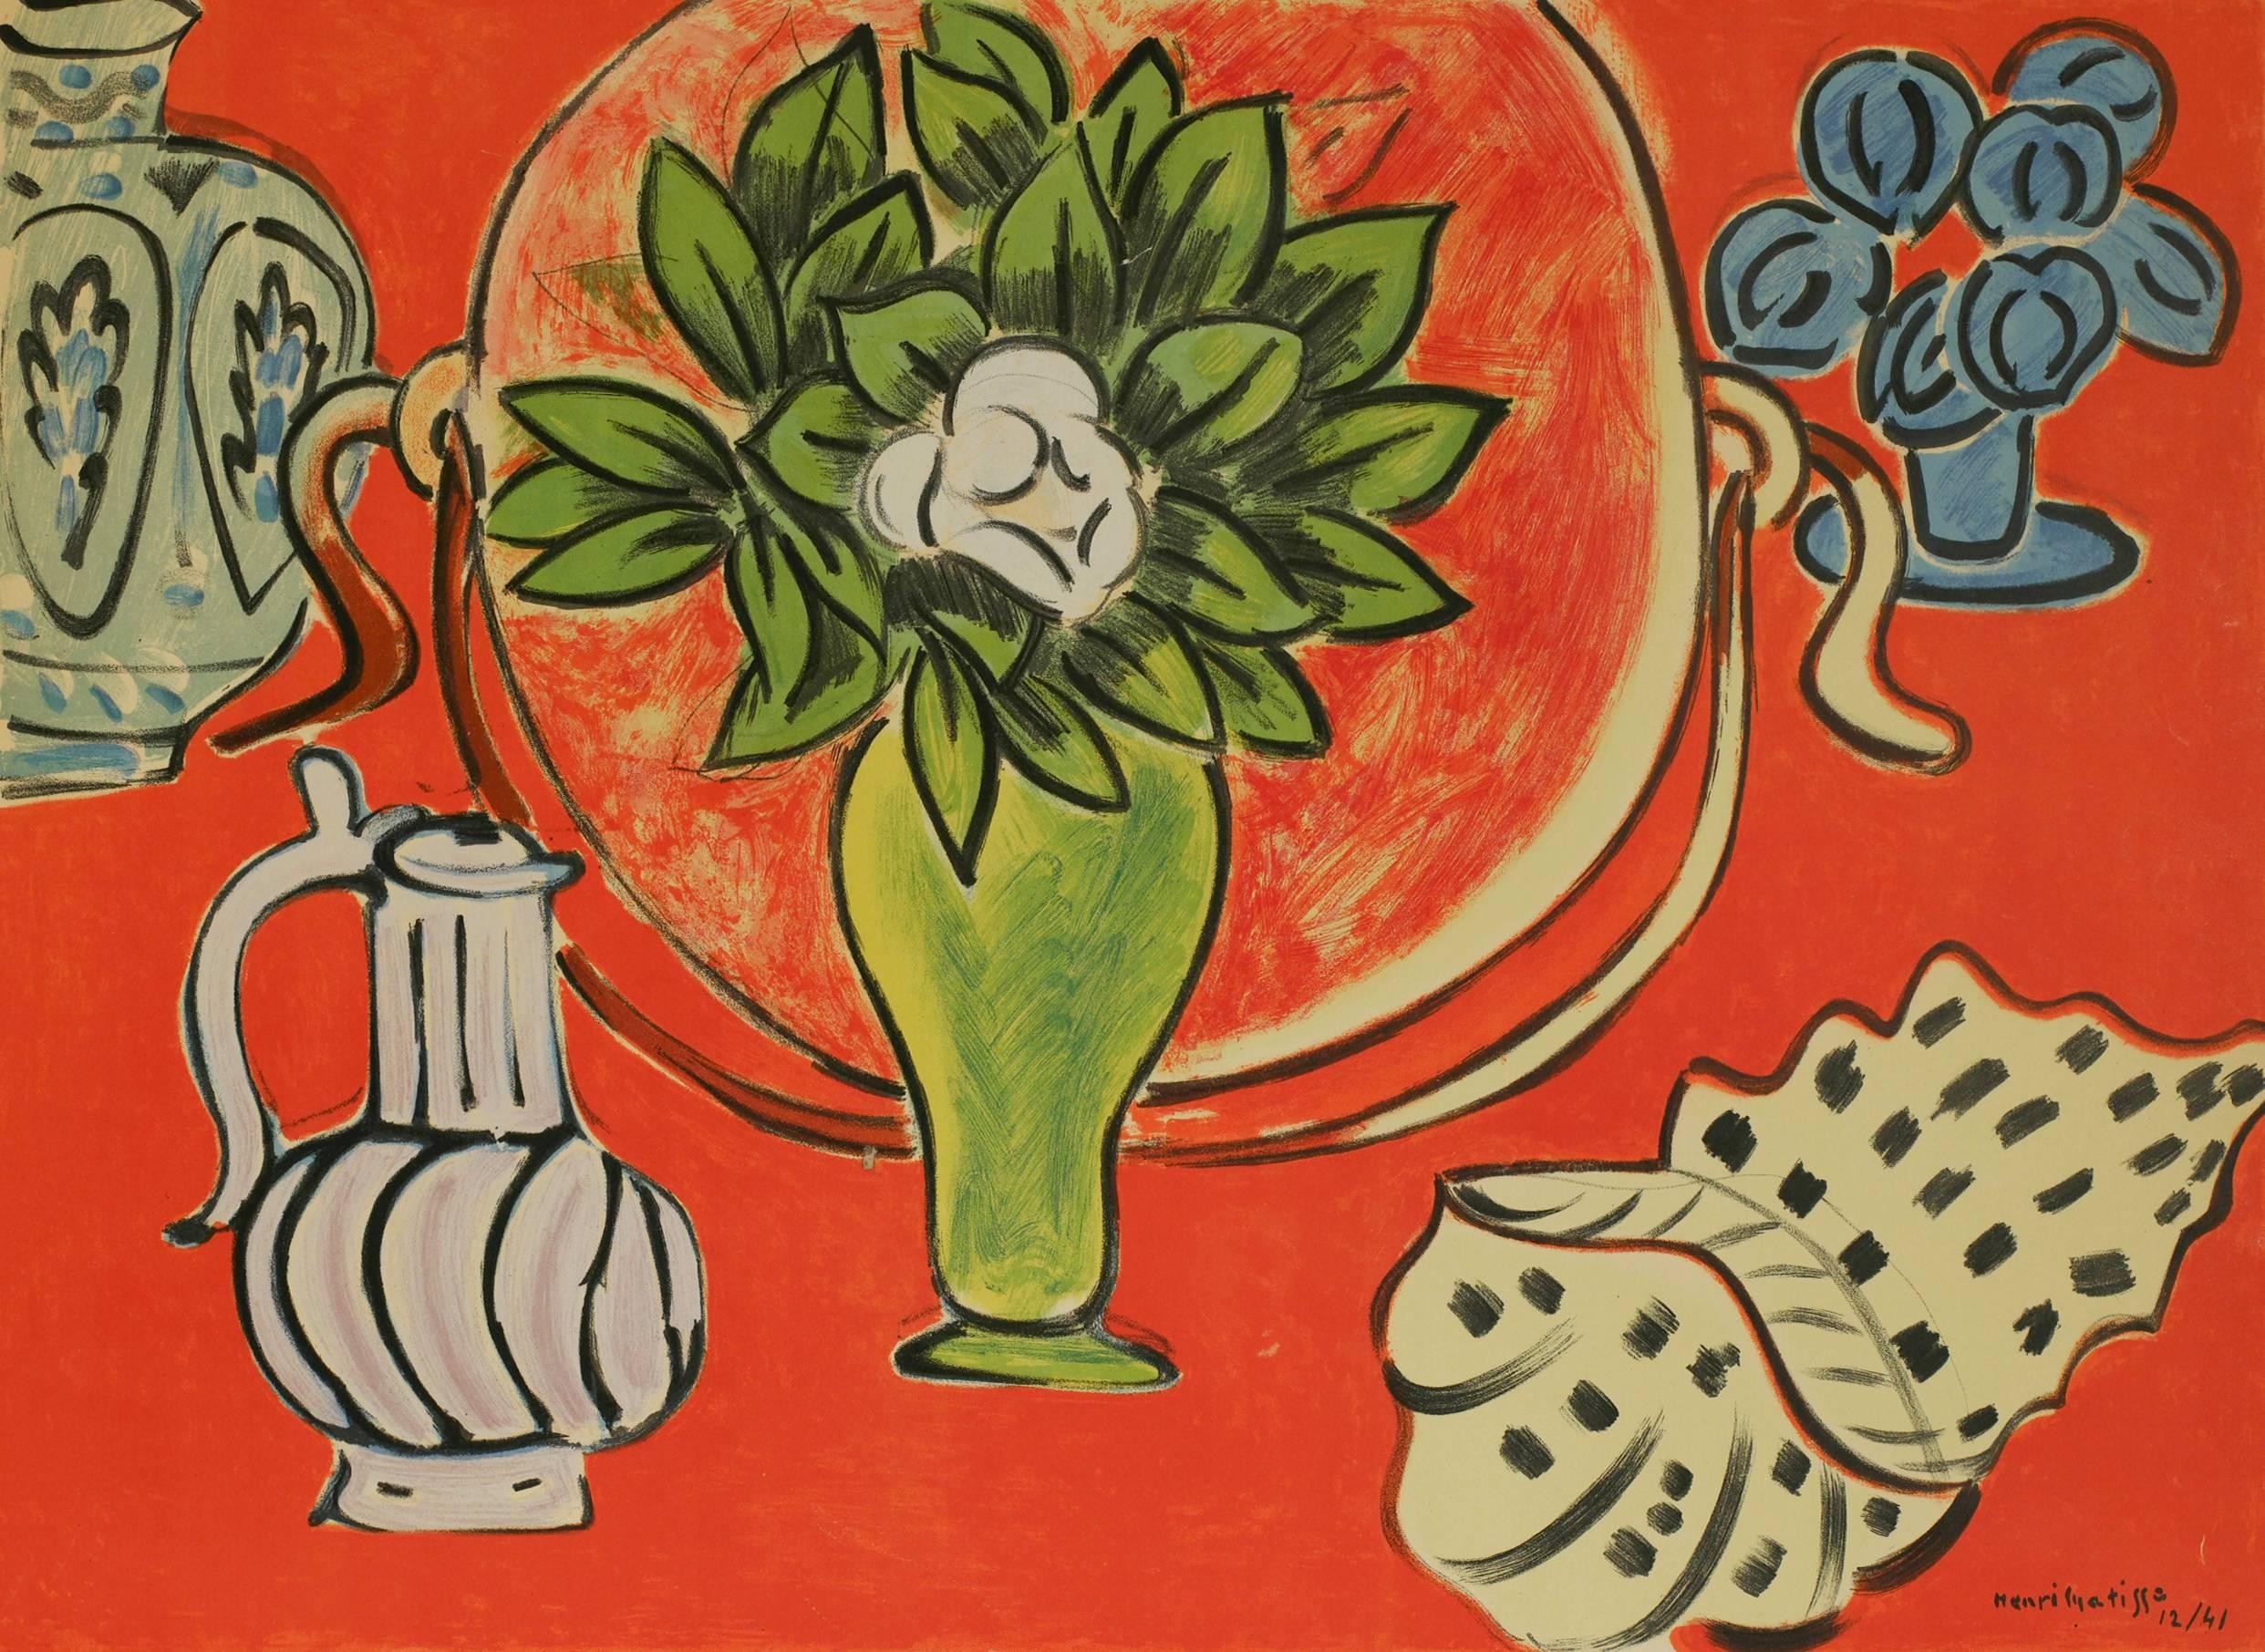 Original Matisse Exhibition Poster - Print by Henri Matisse